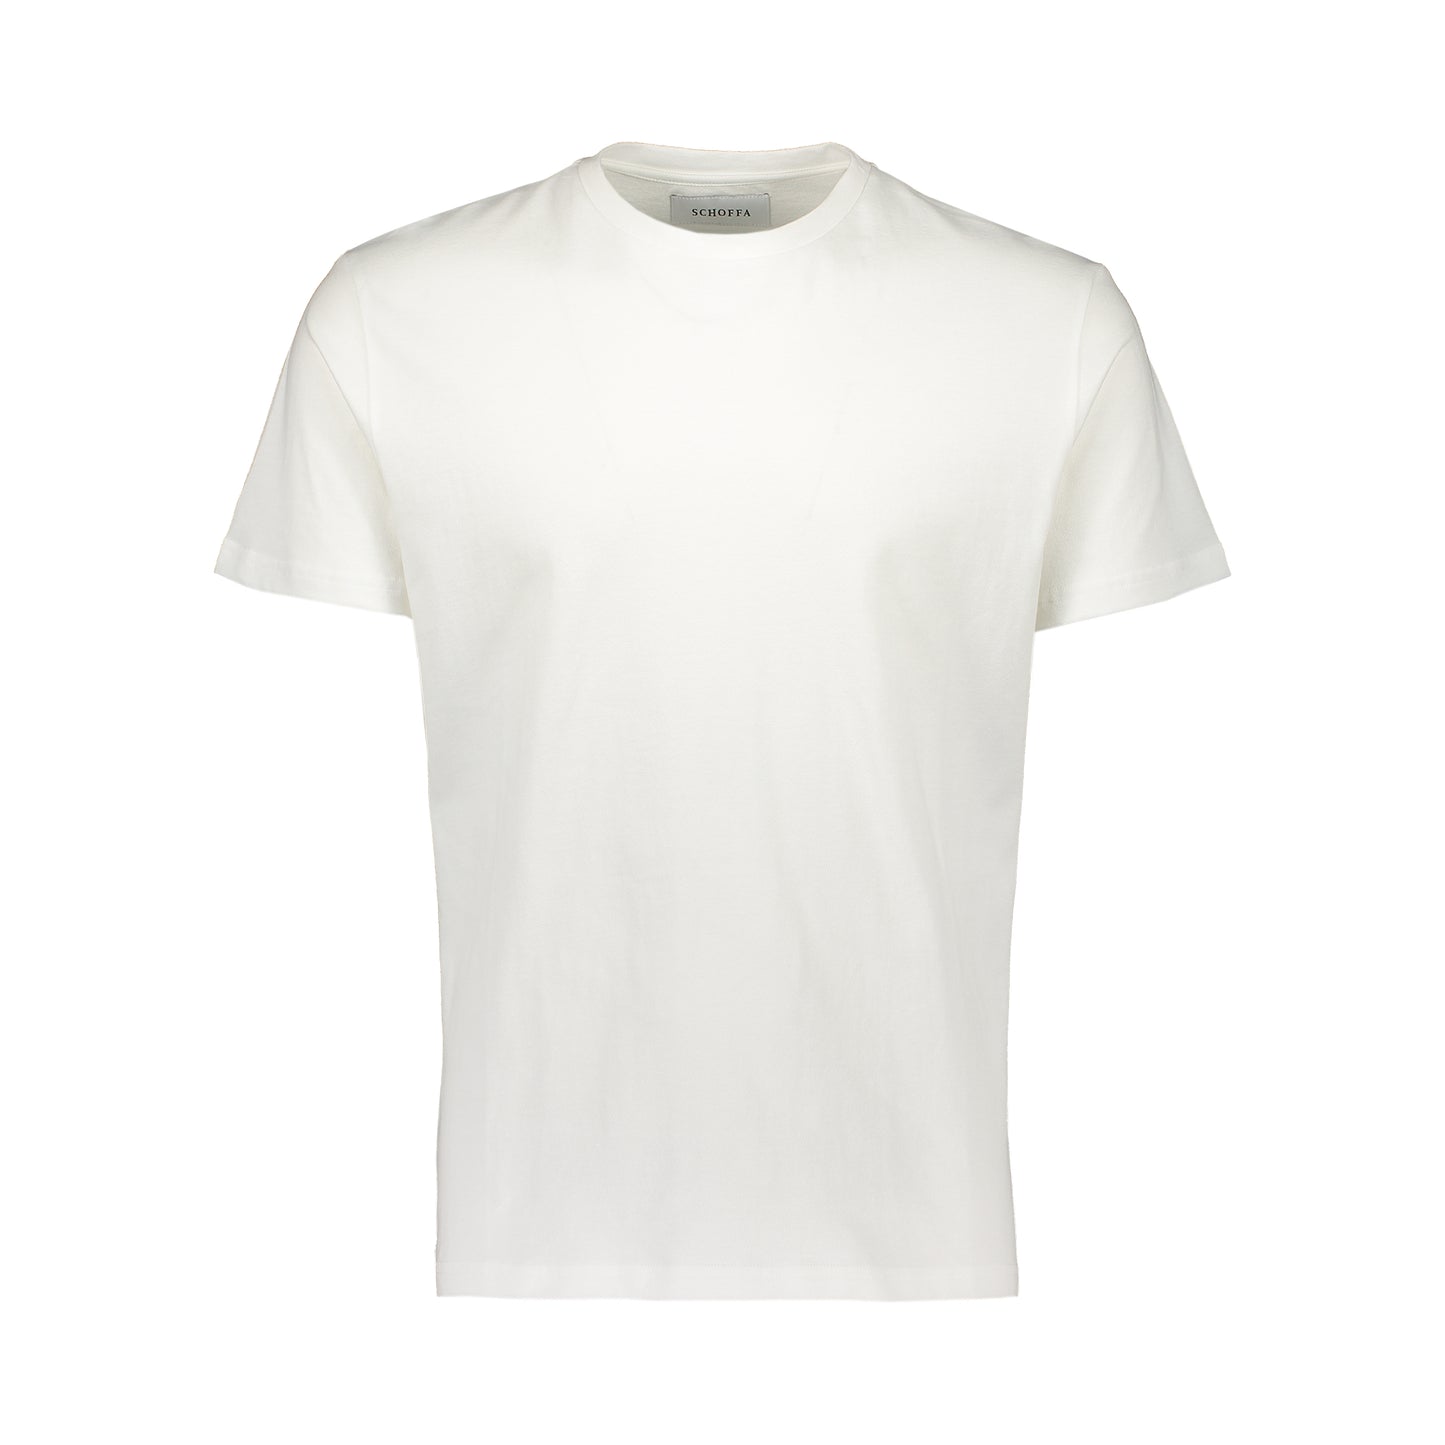 T-Shirt Textured White